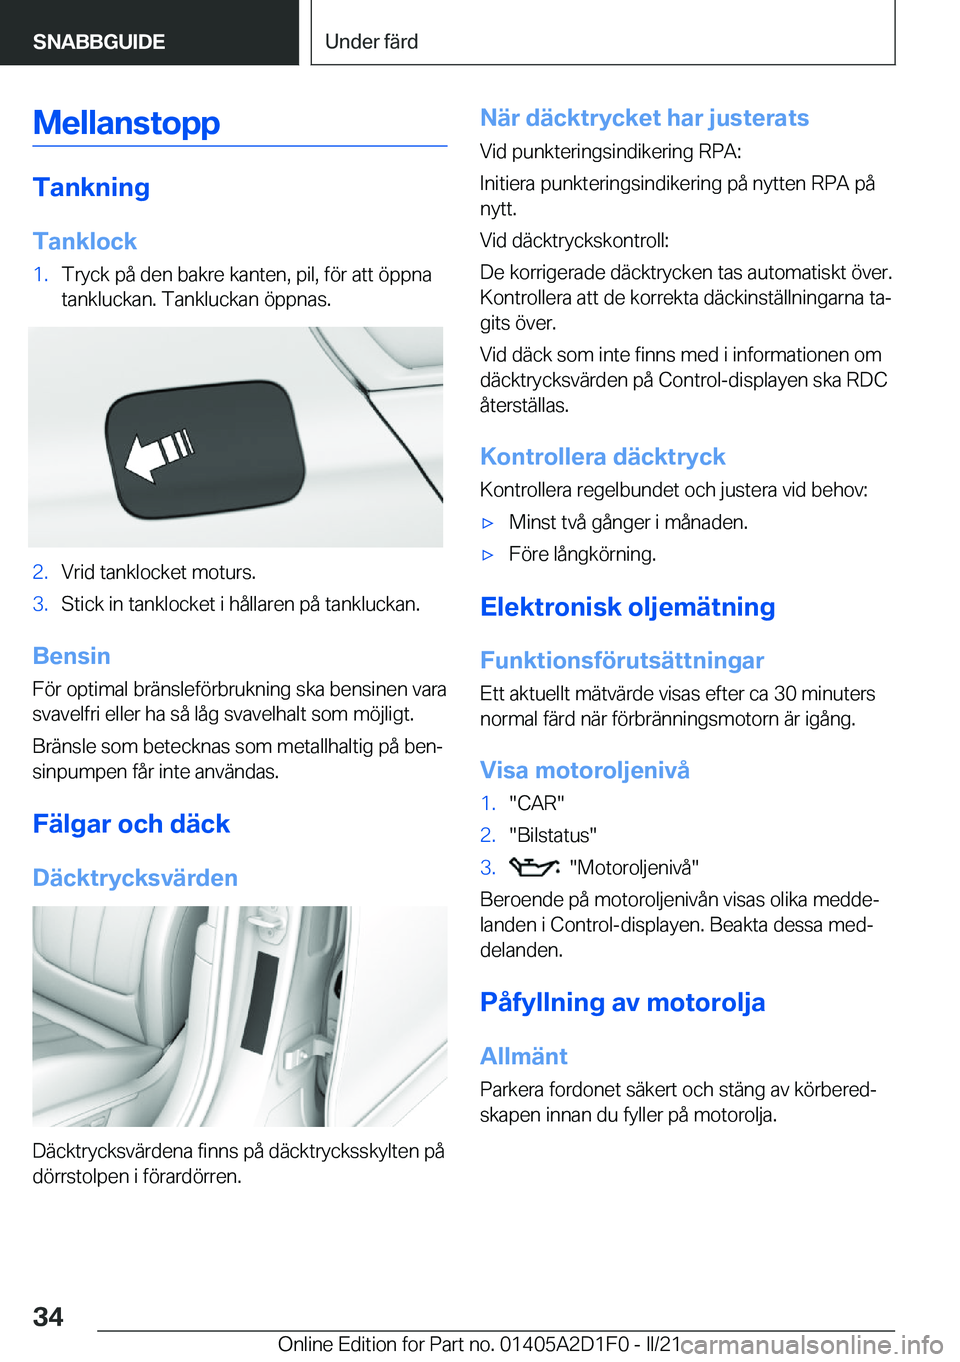 BMW X6 M 2021  InstruktionsbÖcker (in Swedish) �M�e�l�l�a�n�s�t�o�p�p
�T�a�n�k�n�i�n�g�T�a�n�k�l�o�c�k
�1�.�T�r�y�c�k��p�å��d�e�n��b�a�k�r�e��k�a�n�t�e�n�,��p�i�l�,��f�